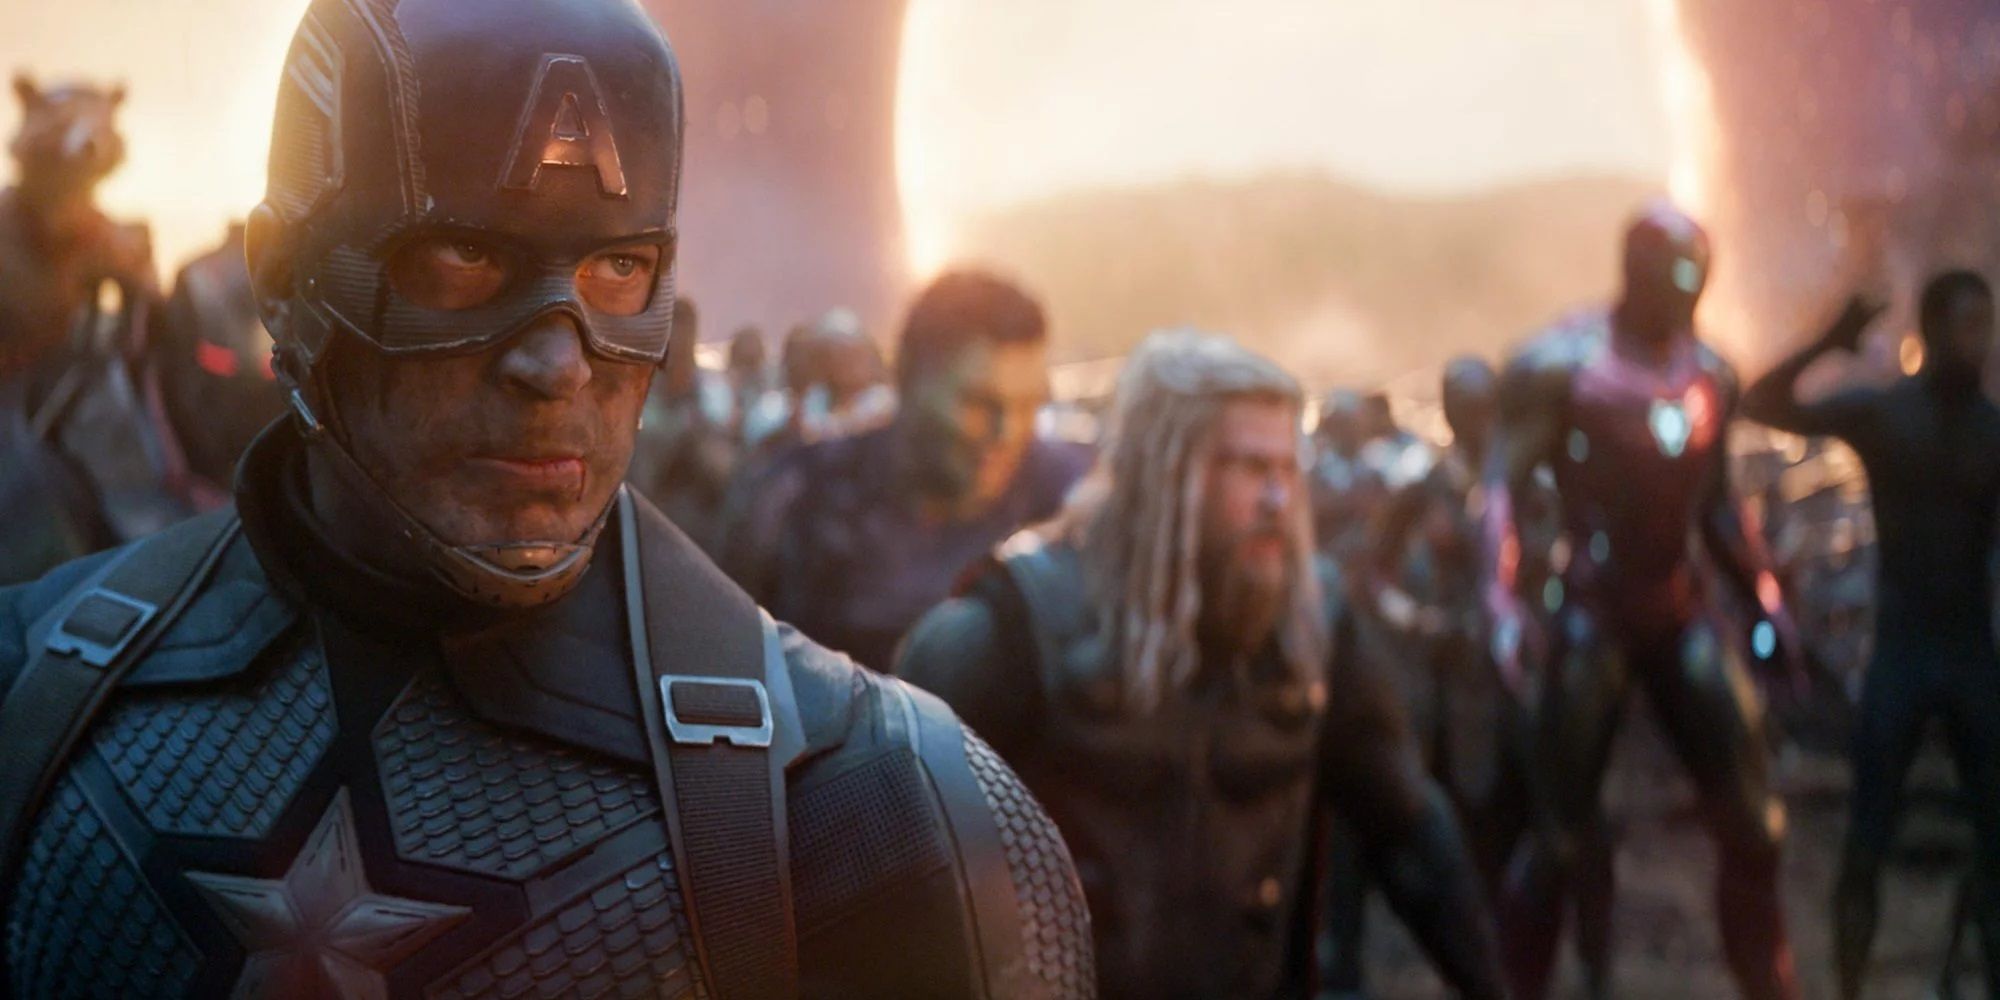 Captain America assembles the Avengers in Avengers Endgame